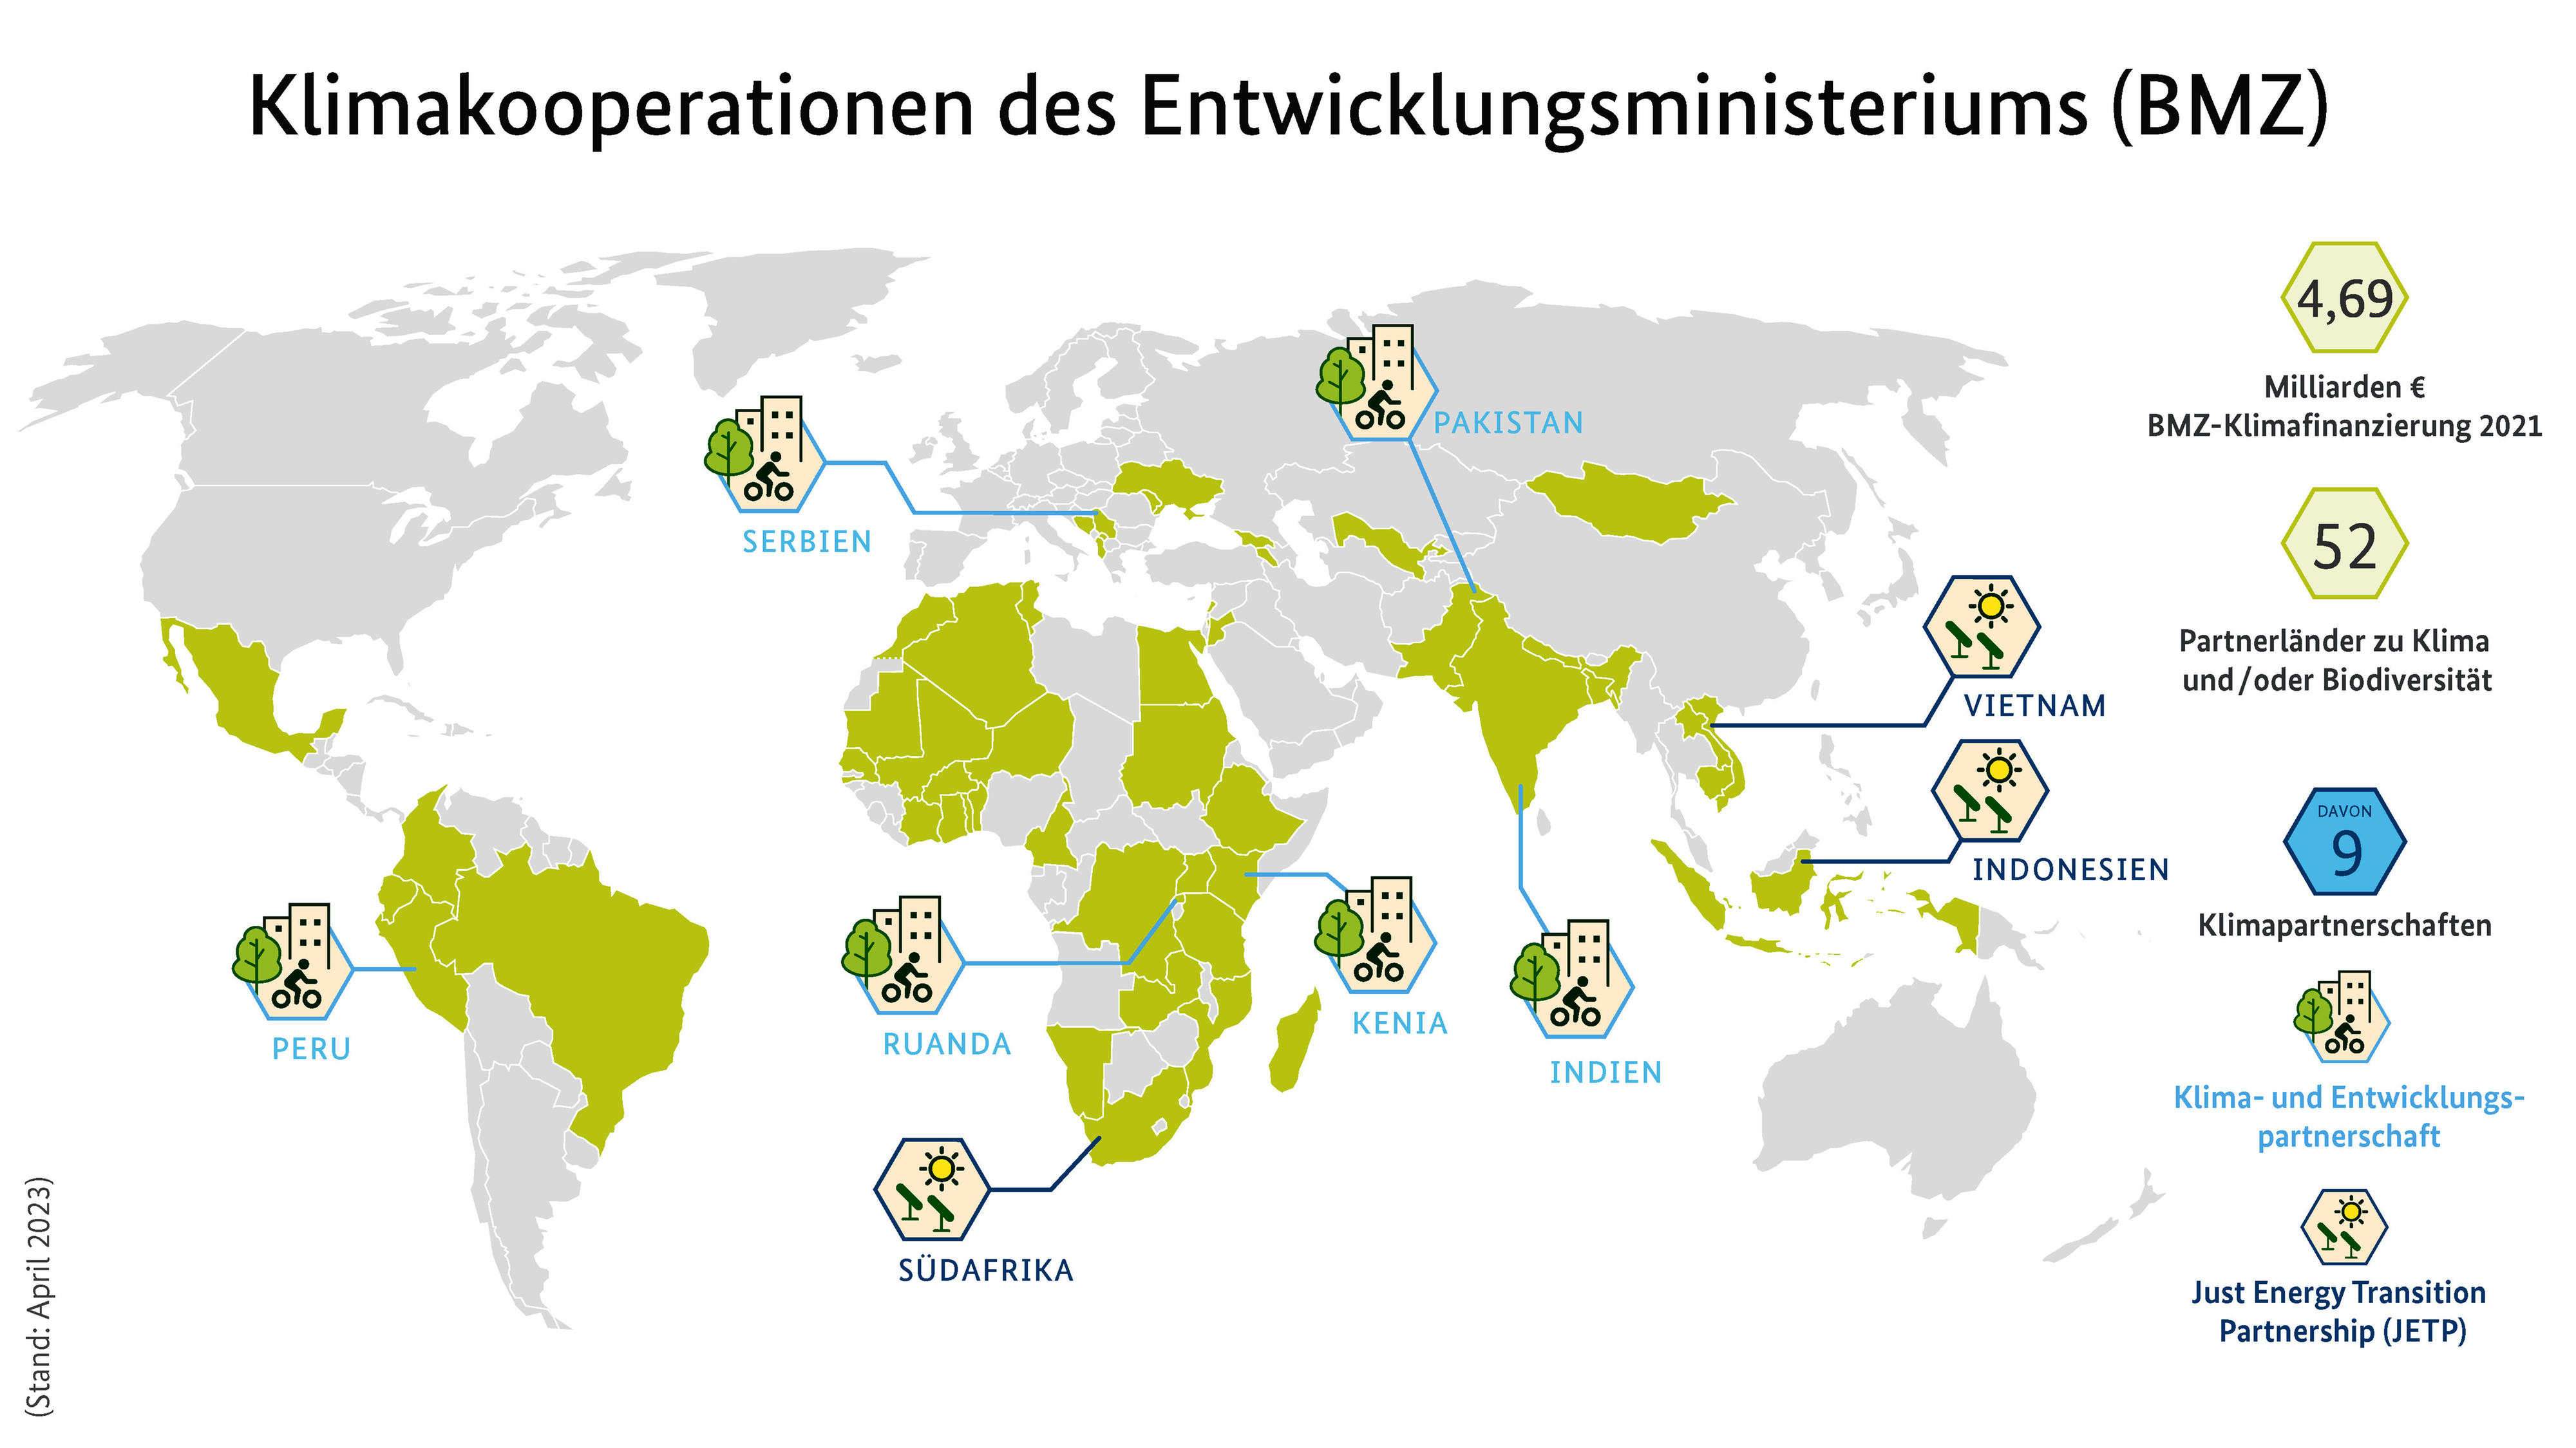 Weltkarte mit Klimakooperationen des Entwicklungsministeriums